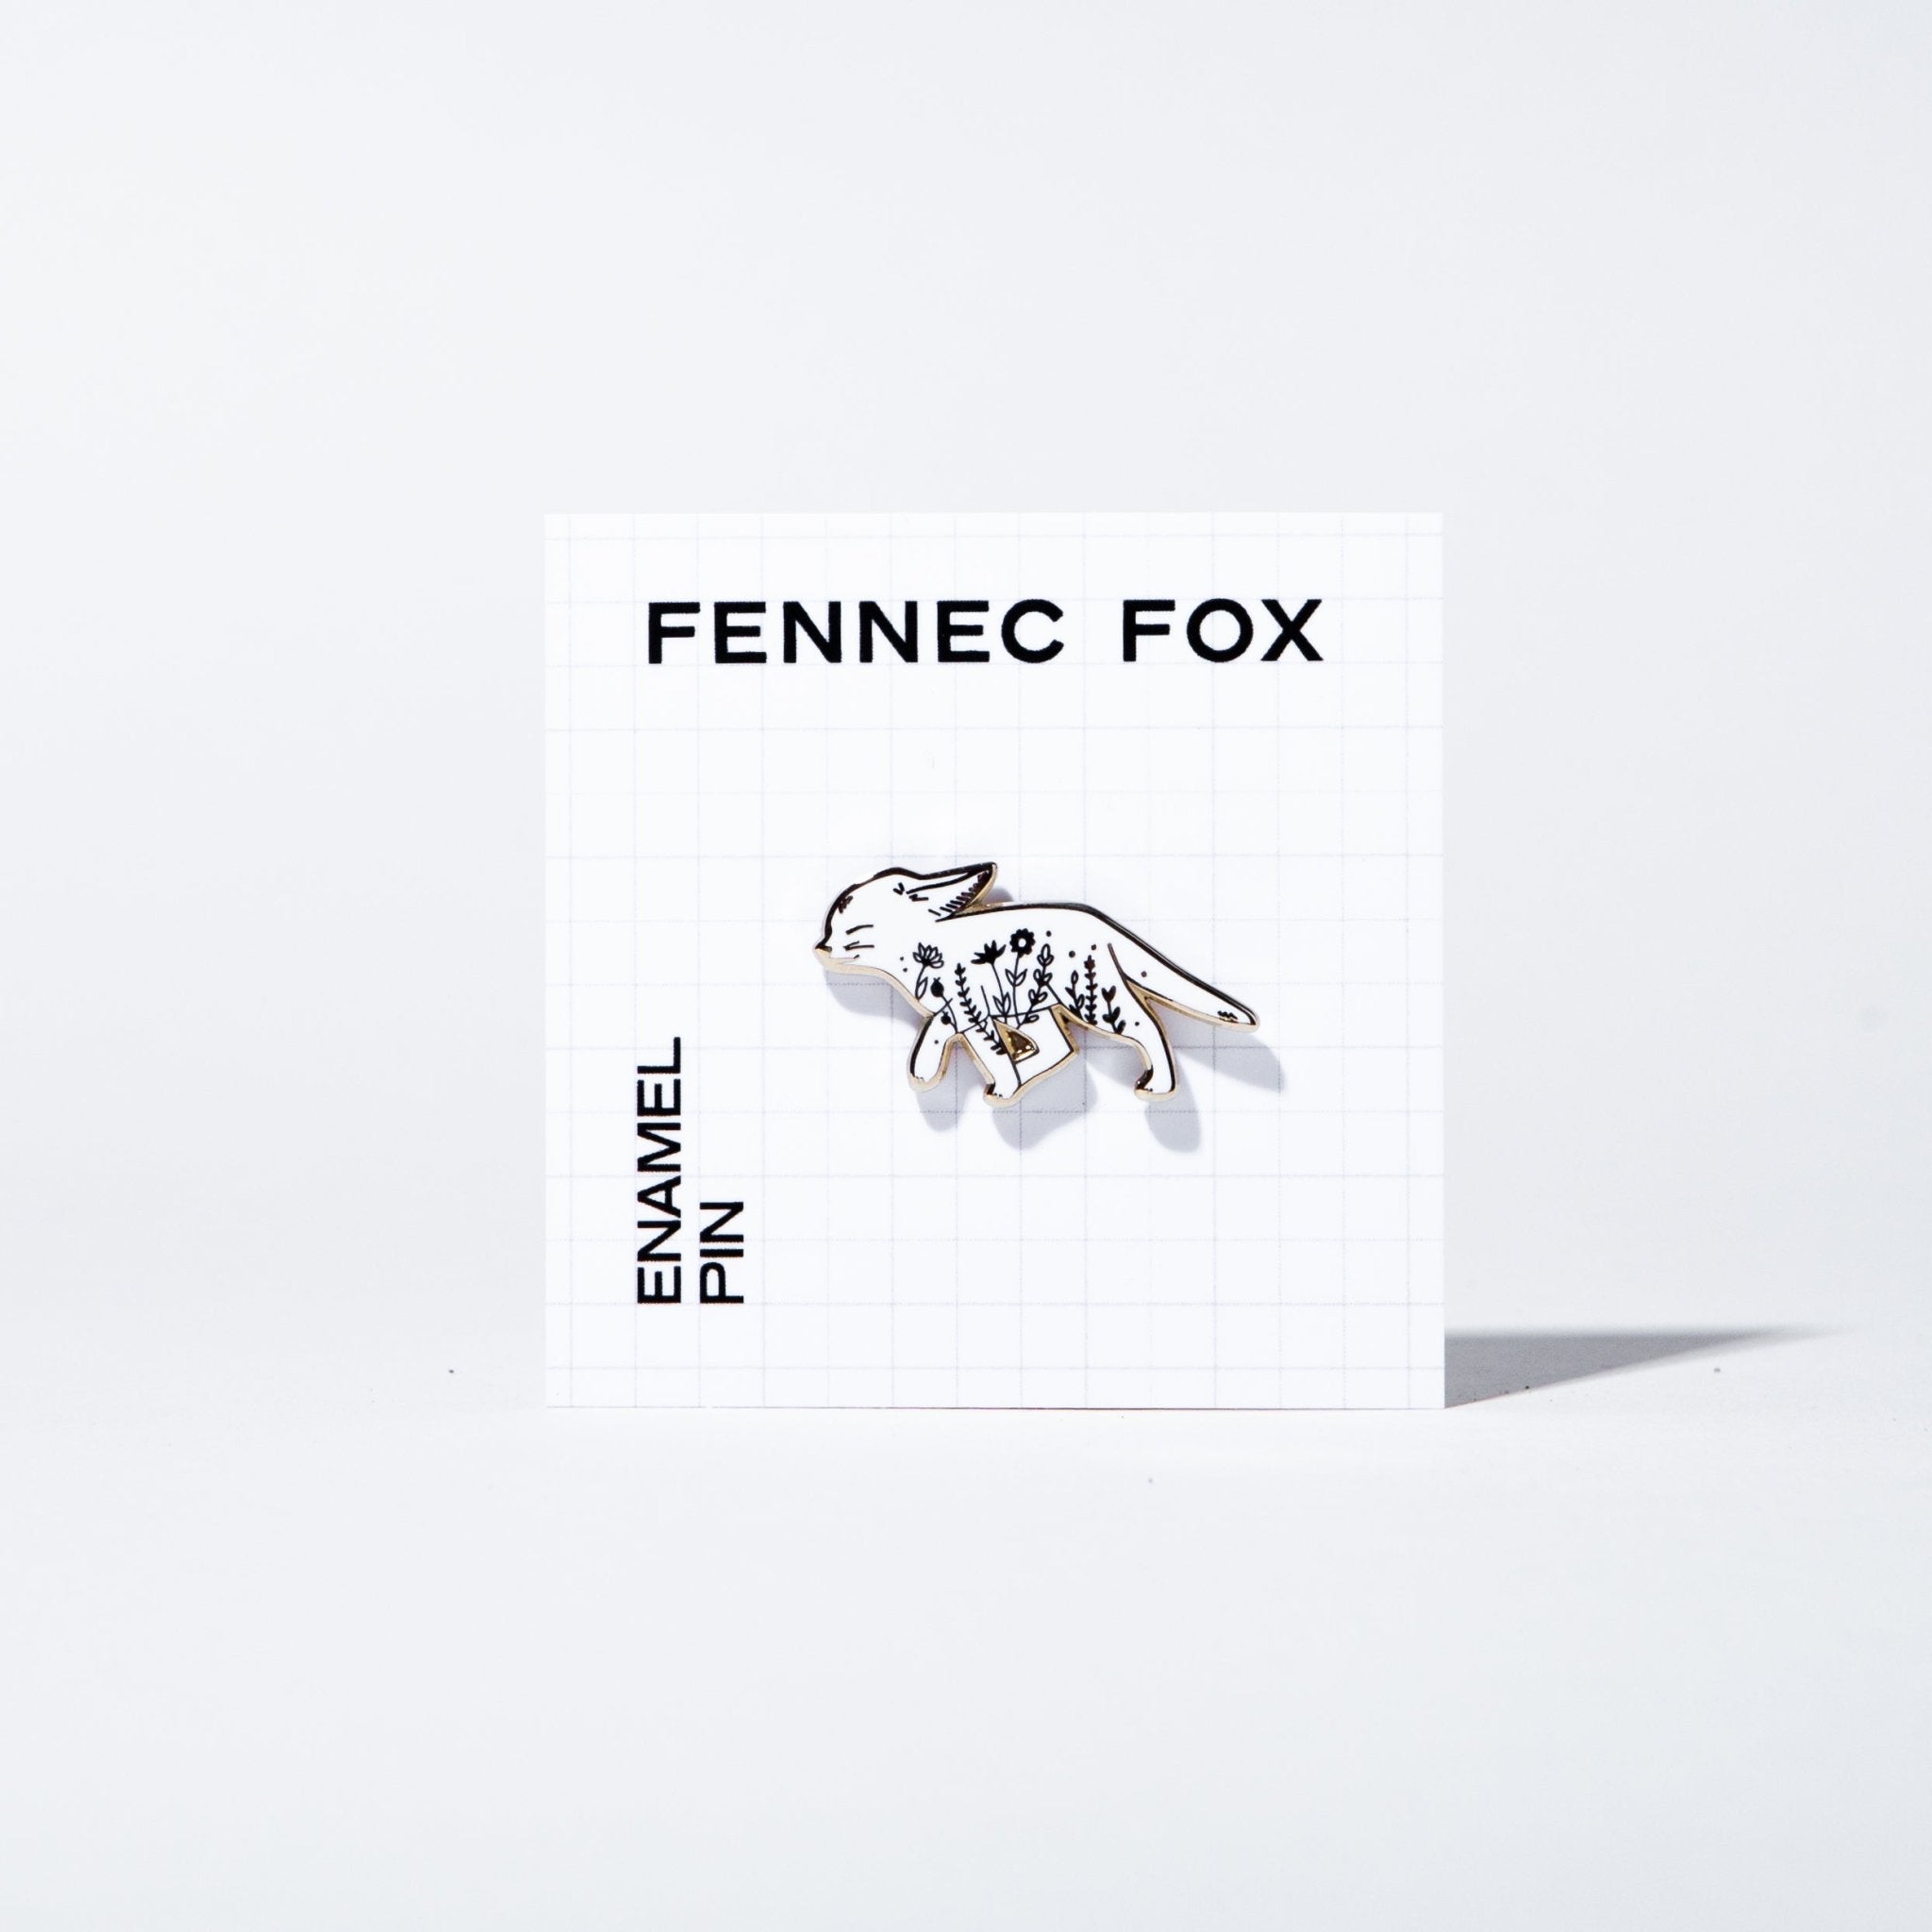 Fennec Fox Pin - Case Study